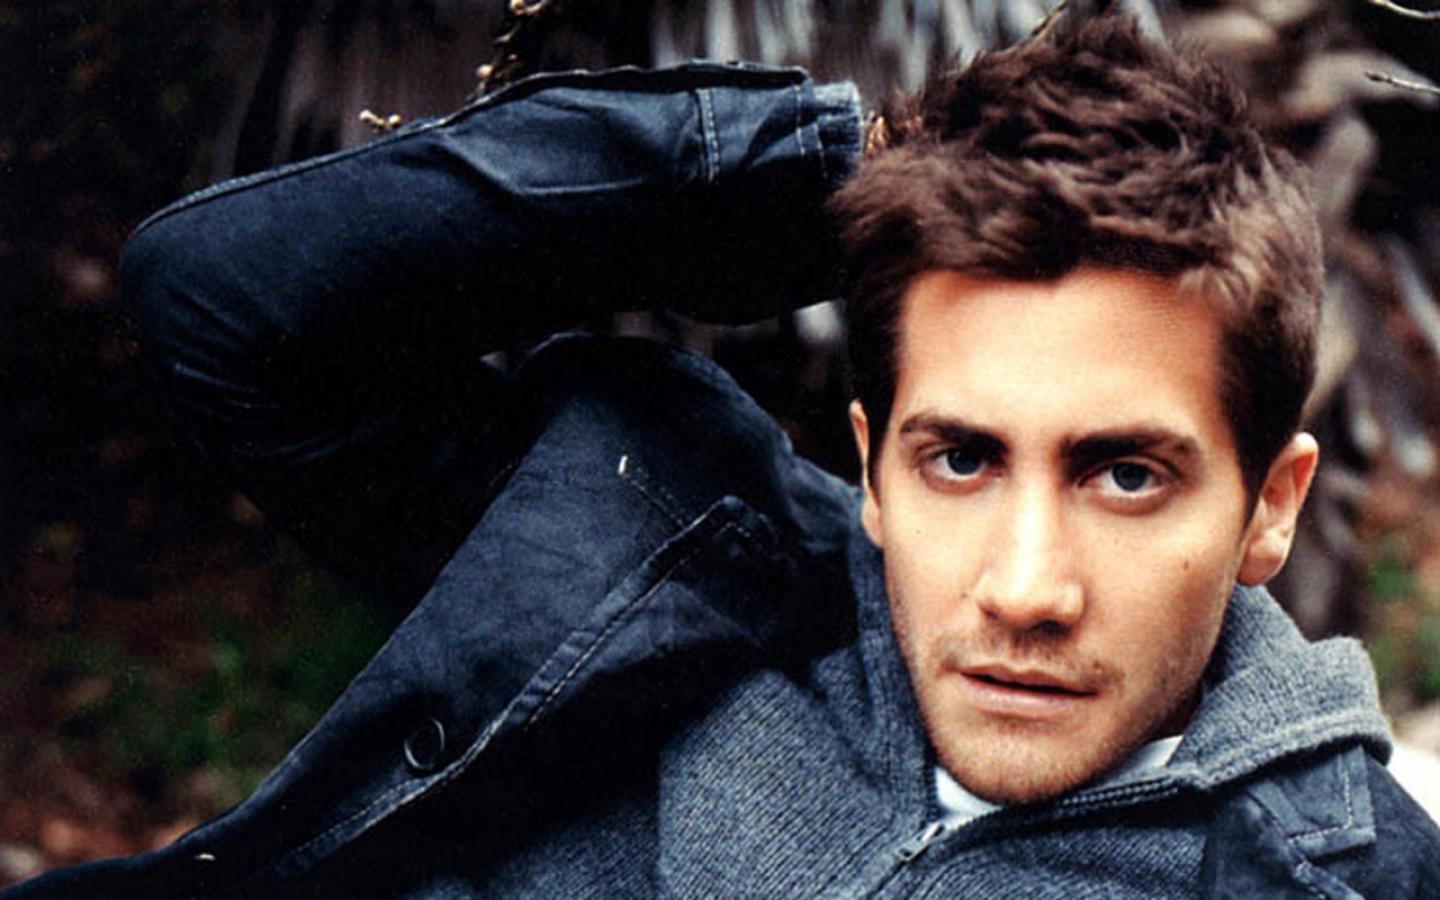 Best looking man Gyllenhaal 1440x900 Wallpaper